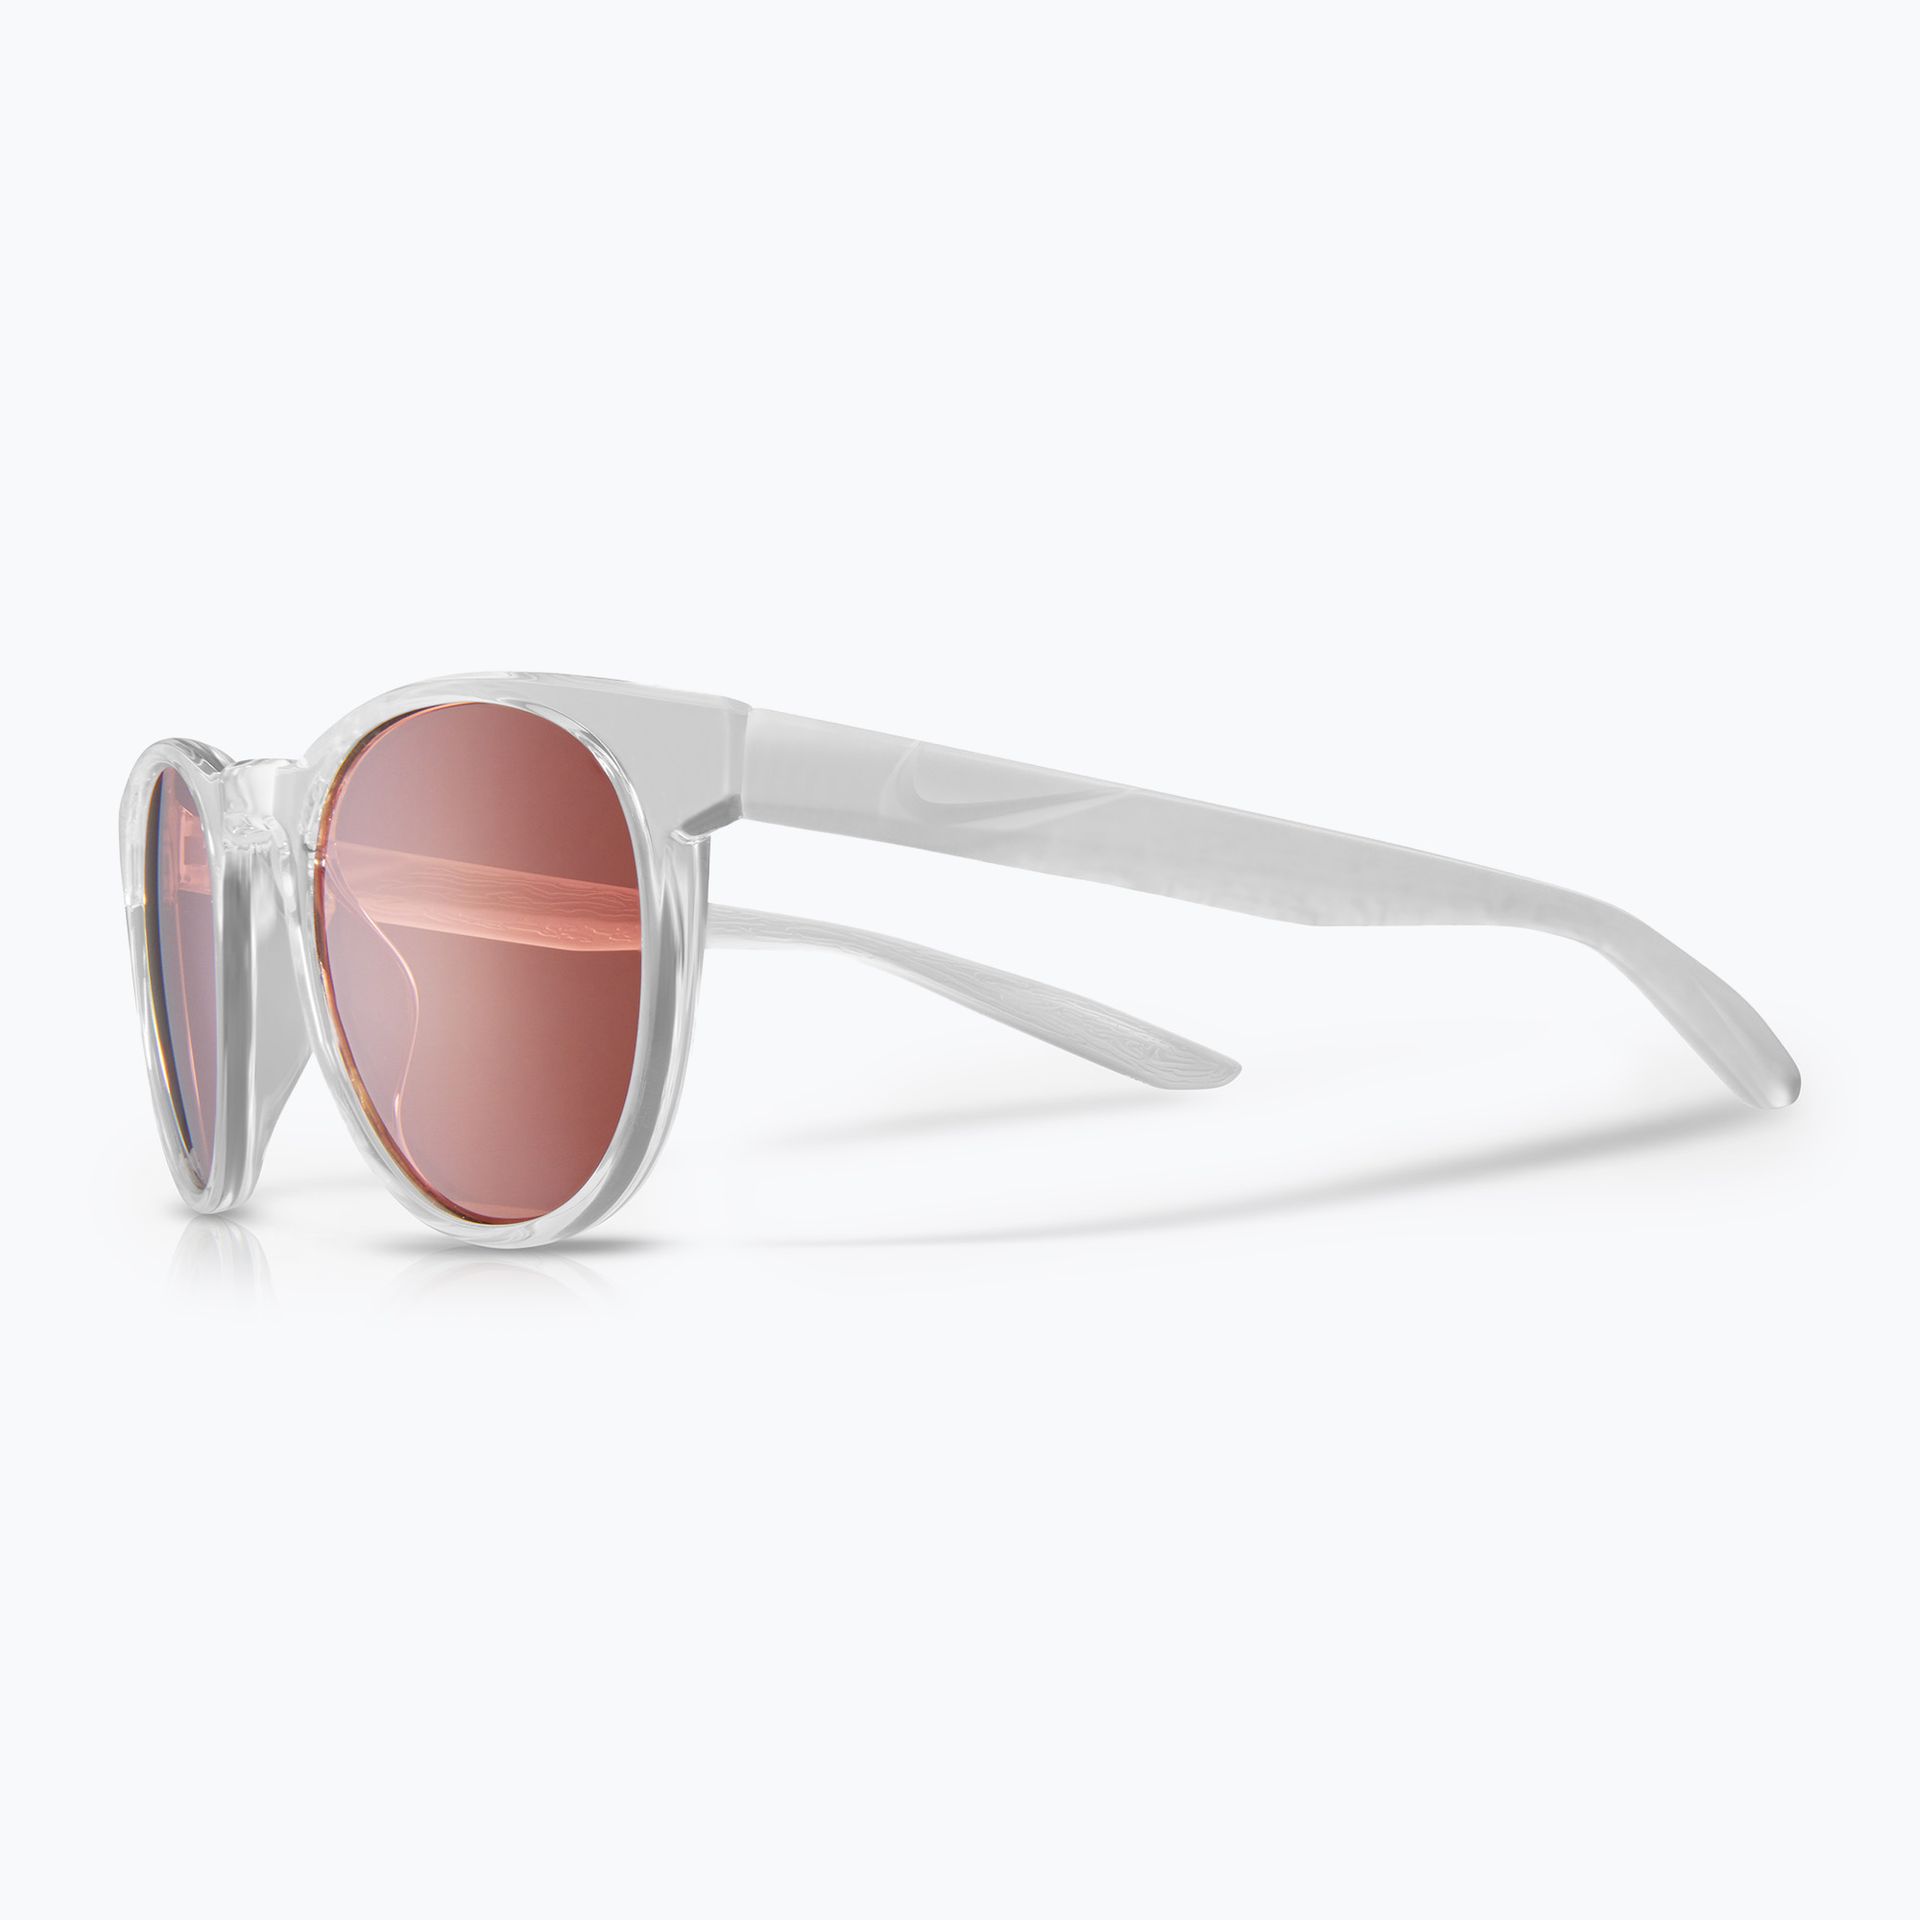 Okulary przeciwsłoneczne dziecięce Nike Horizon Ascent S clear/pink | WYSYŁKA W 24H | 30 DNI NA ZWROT